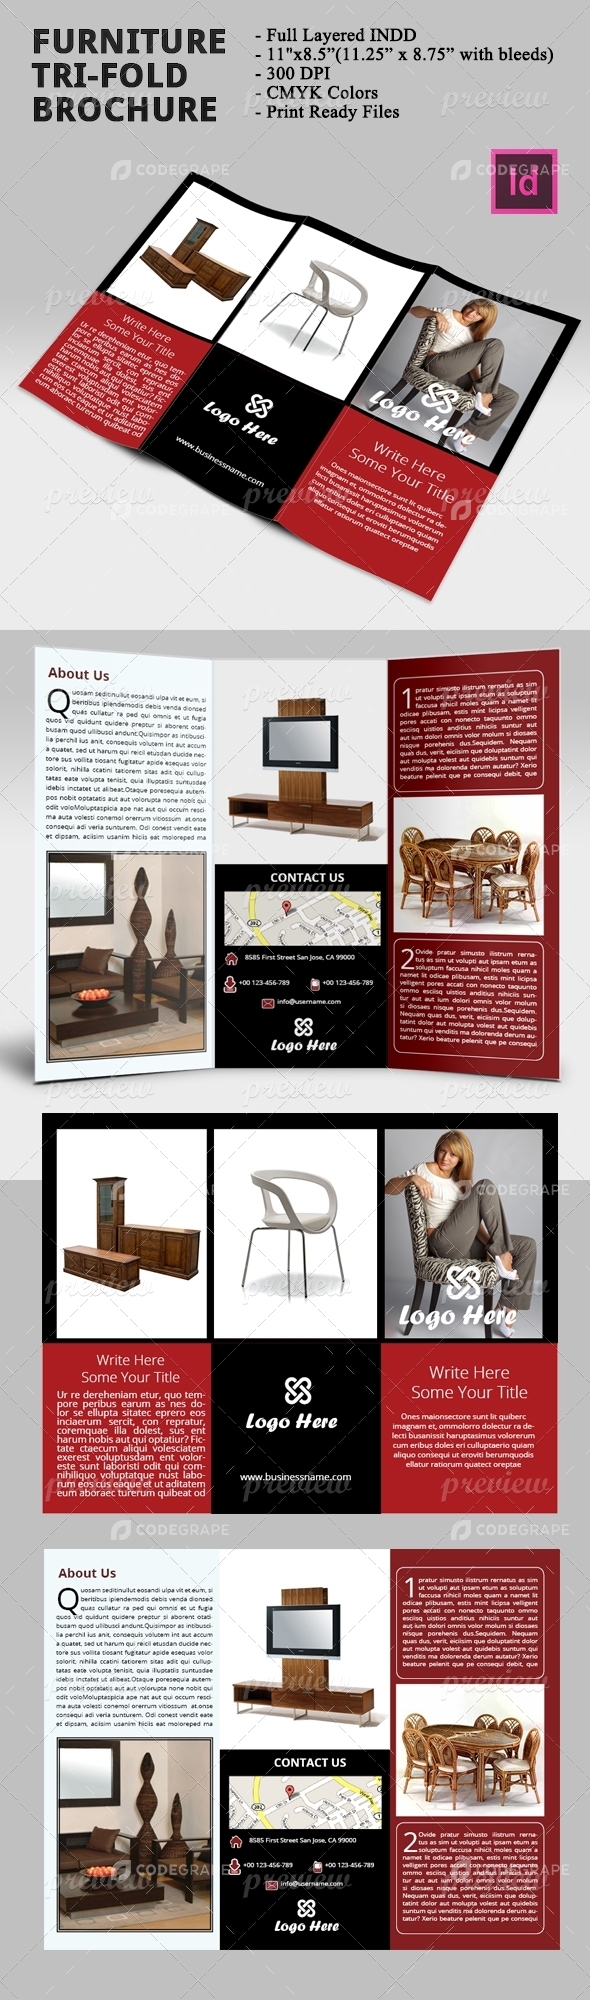 Furniture Tri-Fold Brochure